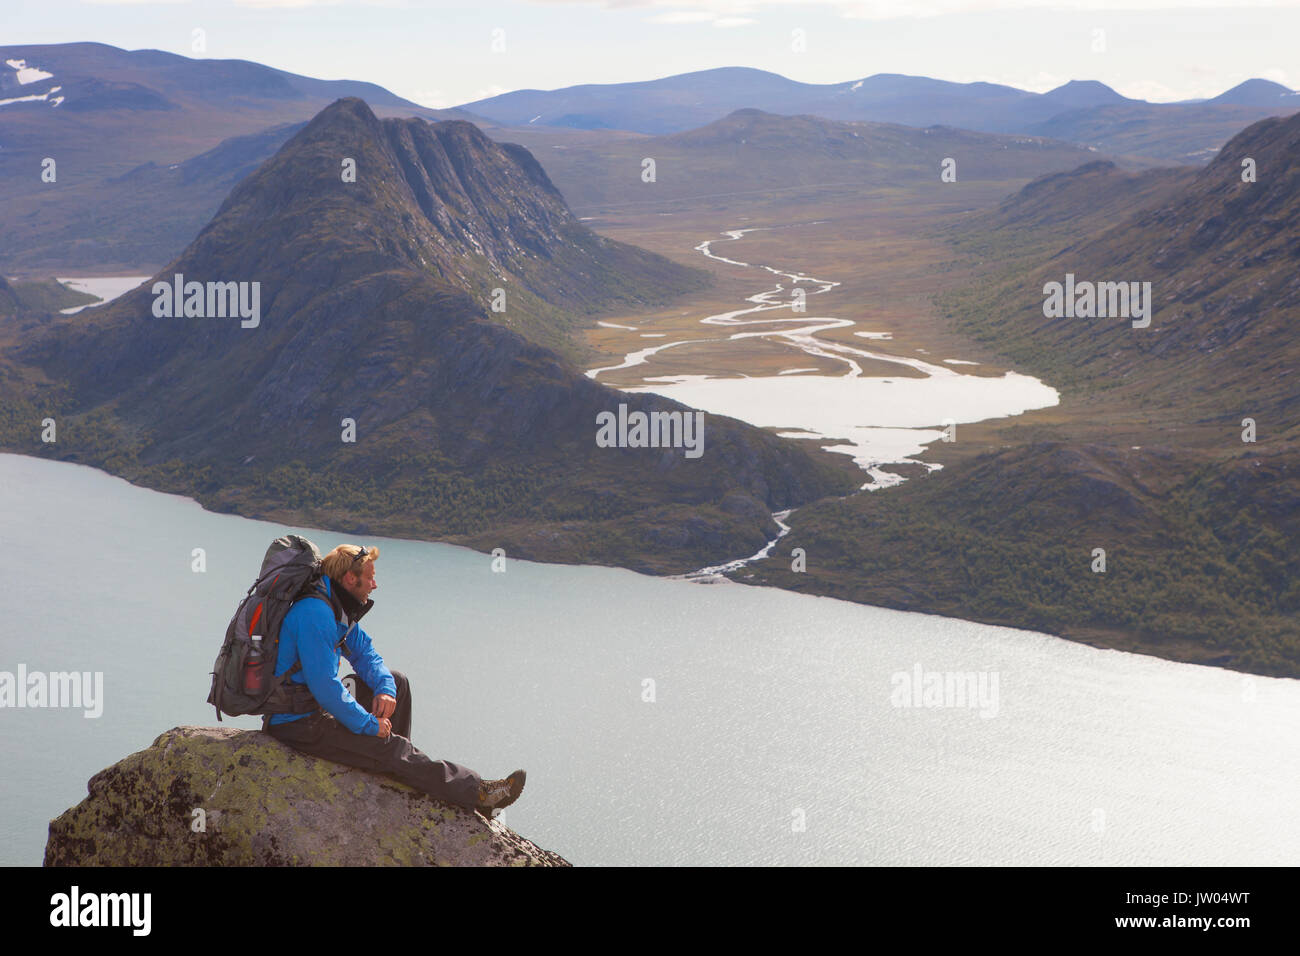 Un randonneur jouit de la vue sur les fjords et les montagnes tout en étant assis sur un rocher de la fameuse crête de Besseggen en Norvège. Cette traverse un jour dans le parc national de Jotunheimen est le sentier de randonnée le plus populaire en Norvège. Banque D'Images